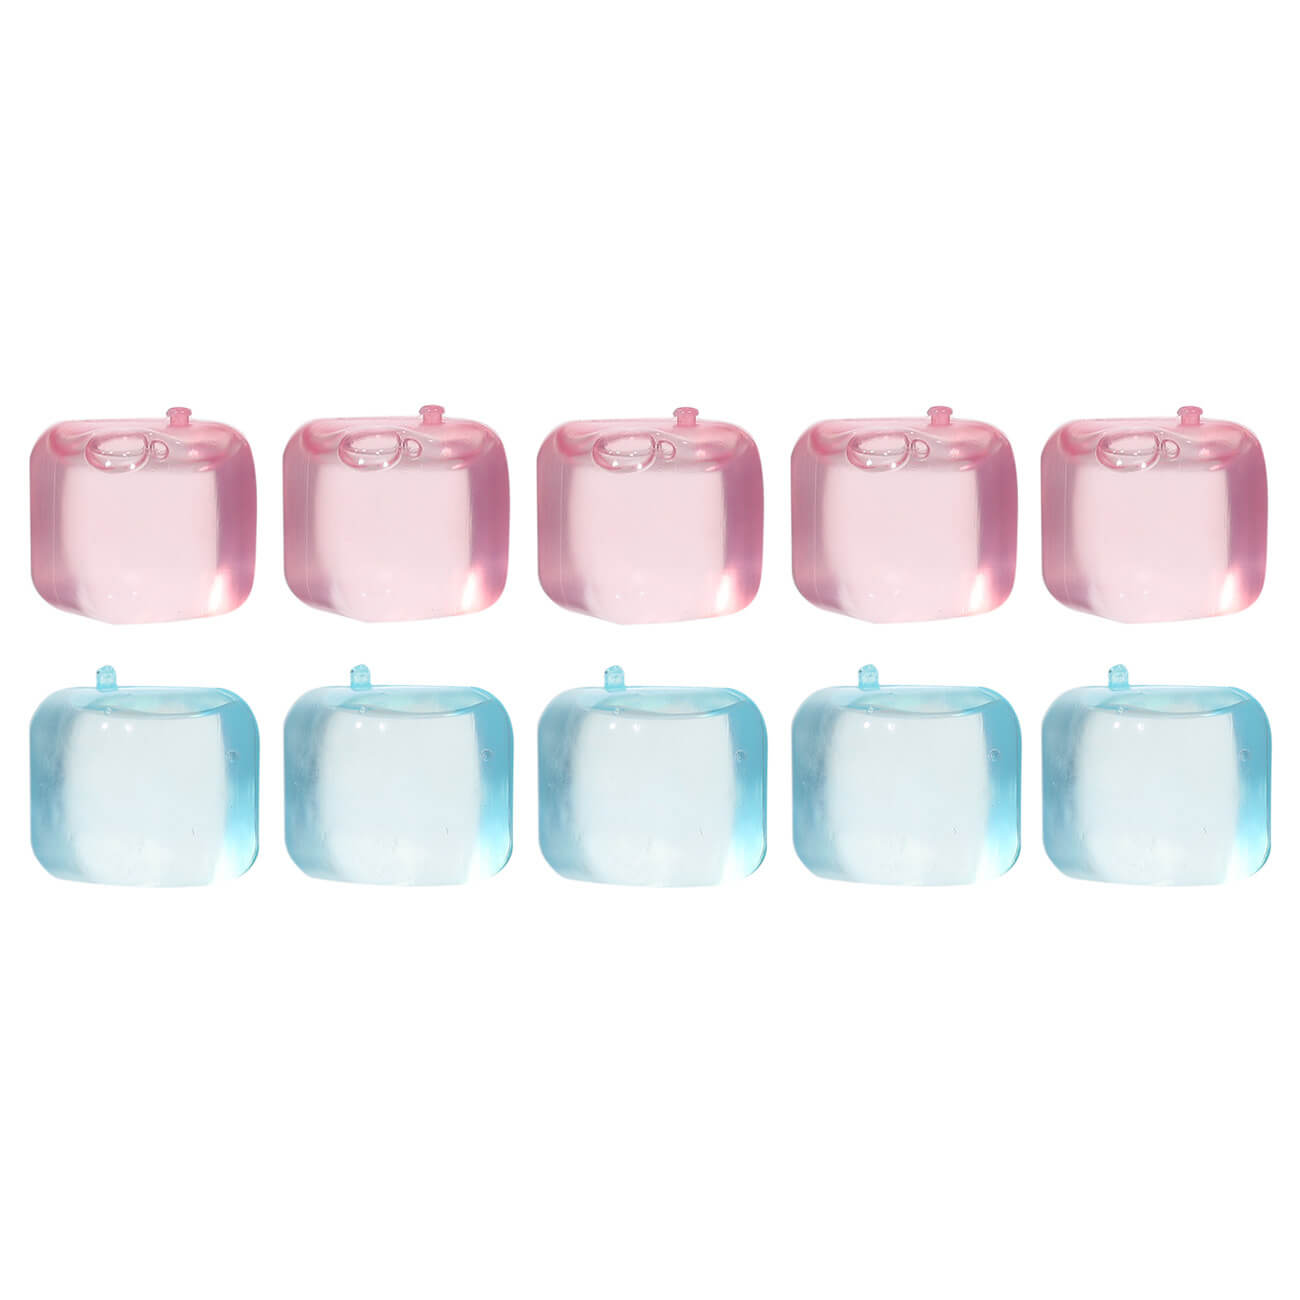 Набор кубиков для охлаждения напитков, 10 шт, пластик, розовый/голубой, Dolce Vita набор для творчества фреска магнит блестки песок раскраска минни маус